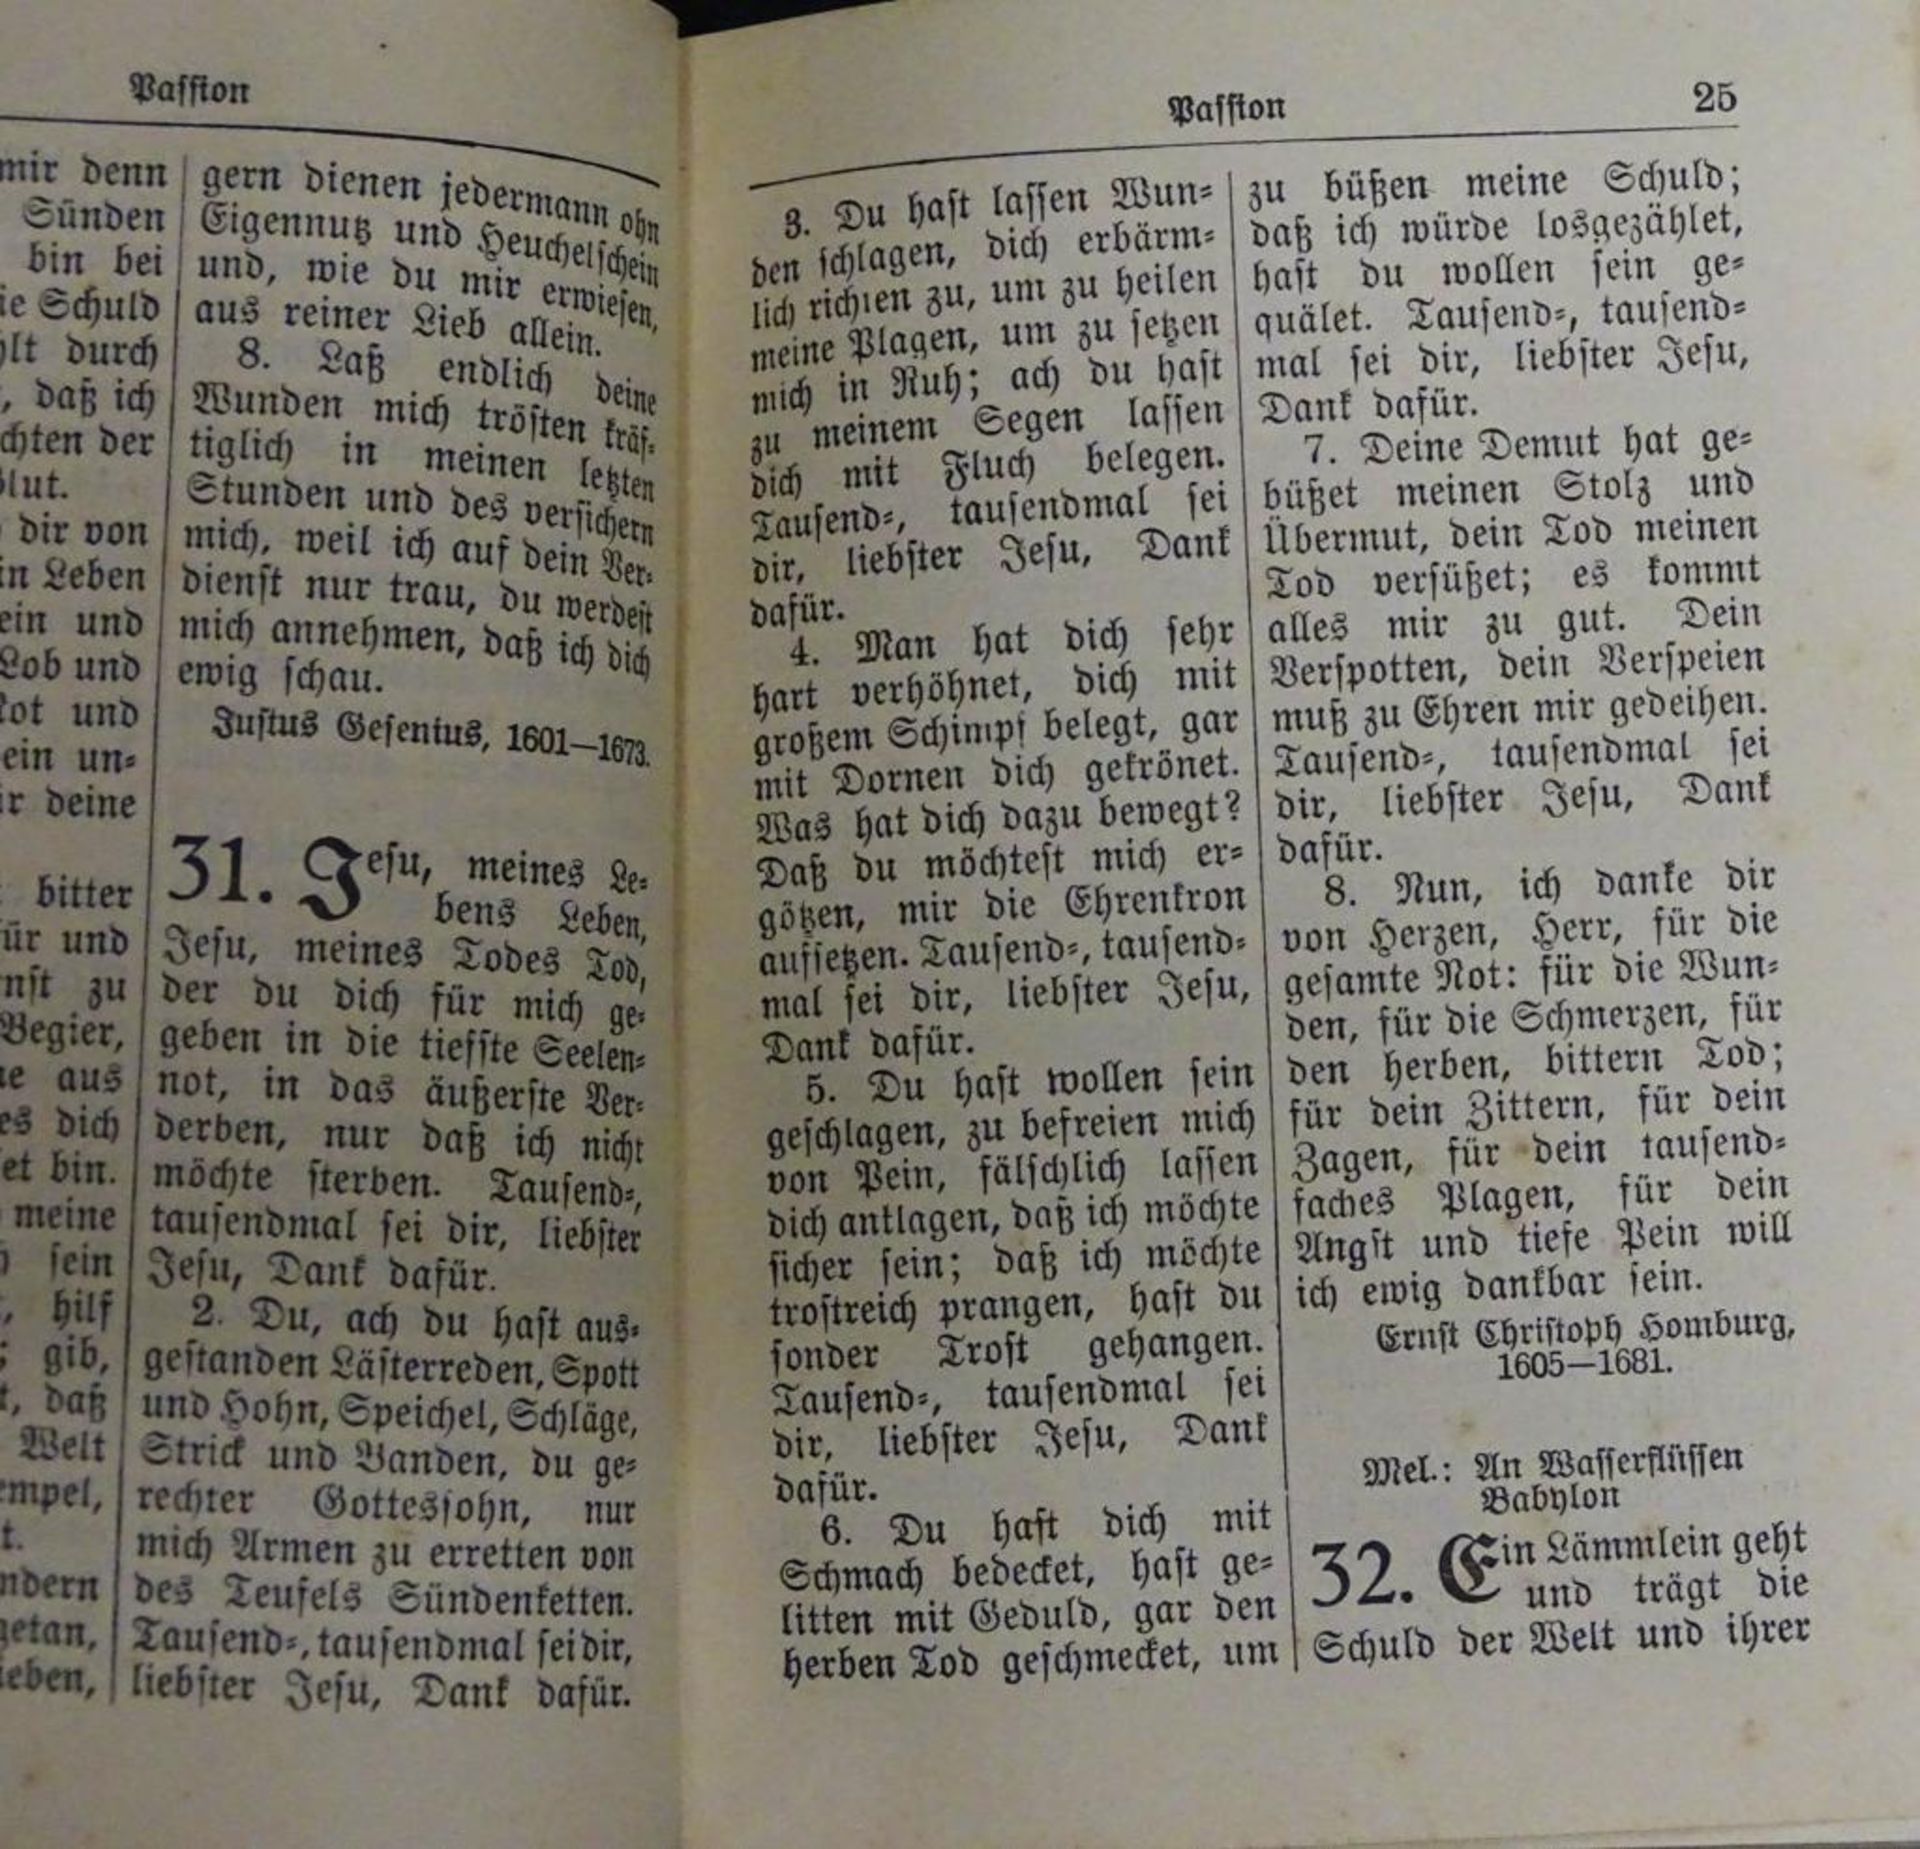 Evangelisches Militär Gesang und Gebetbuch, 1935,Deckblatt fehlt, 13x9,5c - Bild 3 aus 6